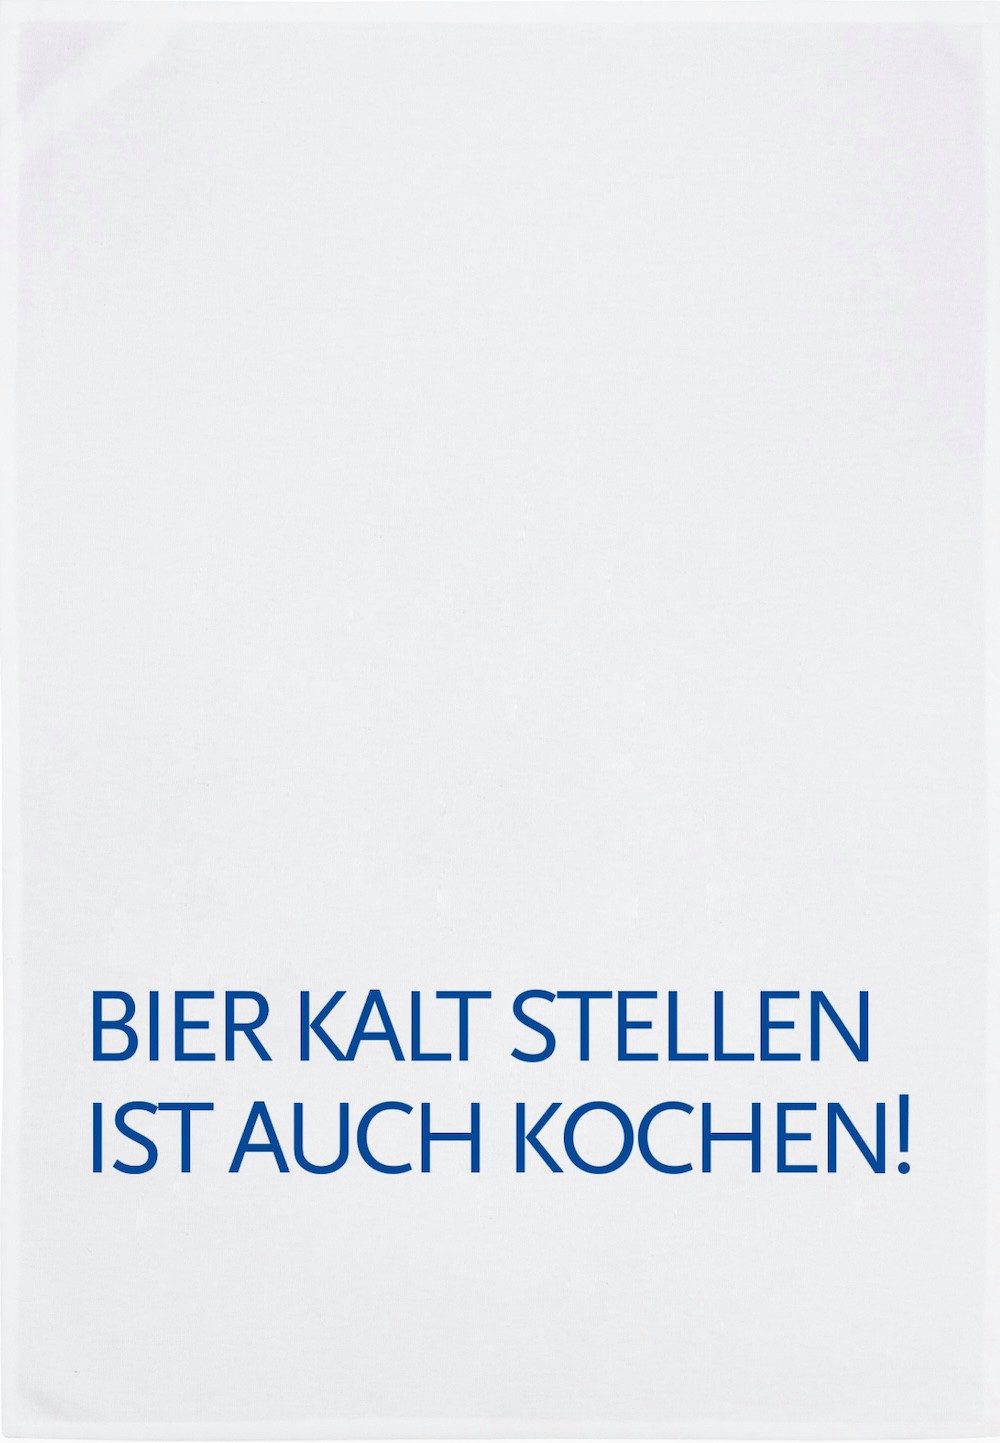 17;30 Hamburg Geschirrtuch Geschirrtuch weiß BIER KALT STELLEN blau 70x50cm, aus 100% Baumwolle